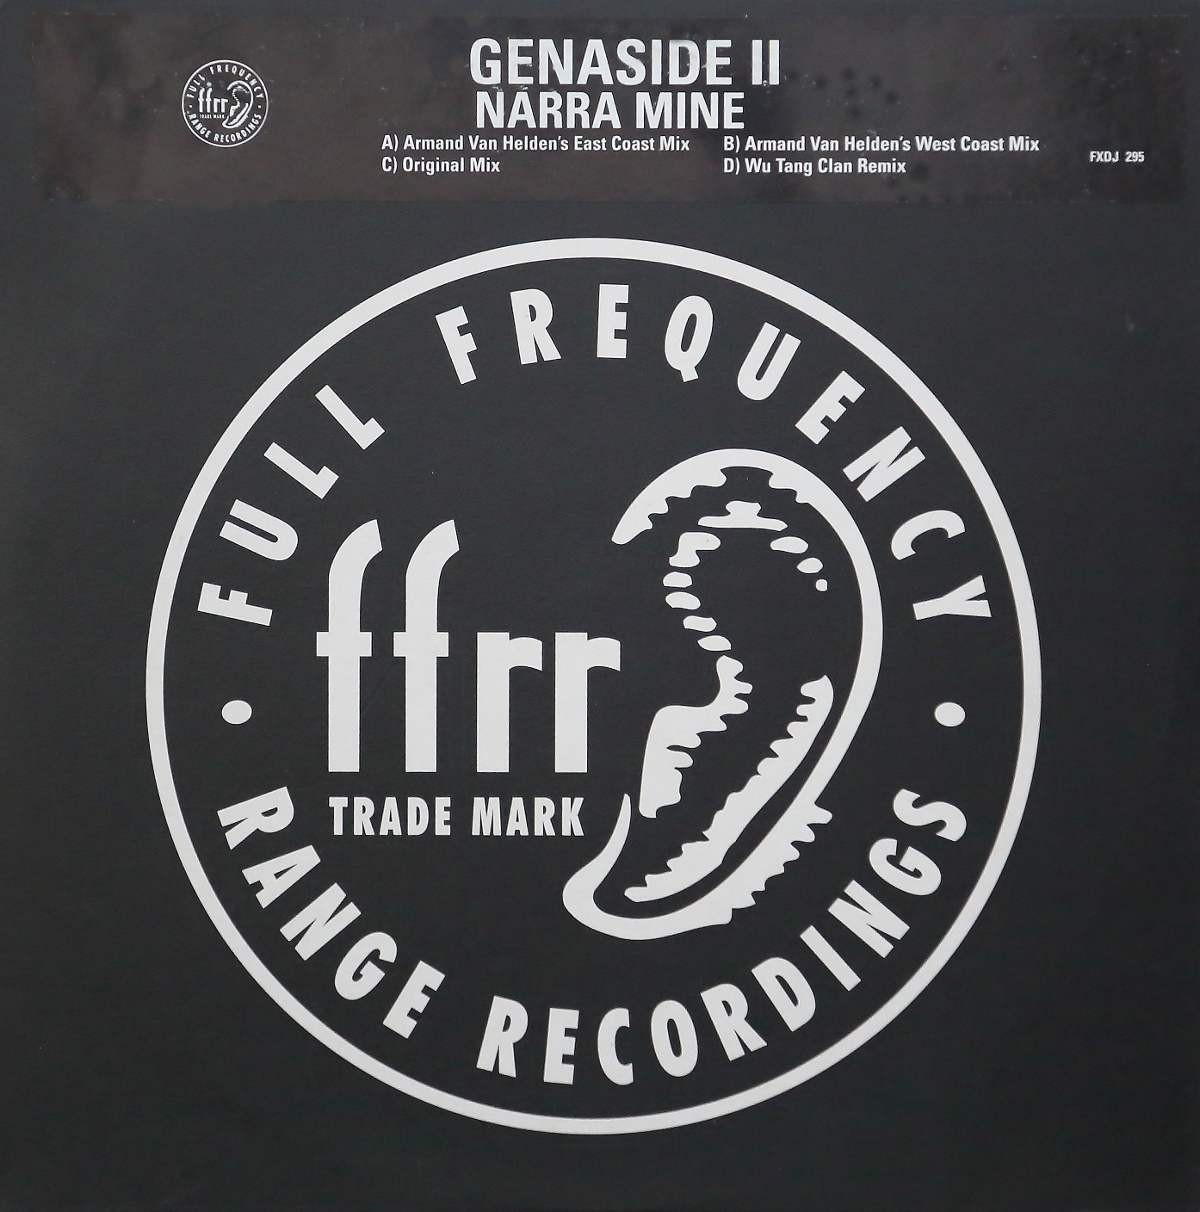 Genaside II - Narra mine (2 x 12" Vinyl) Original Version / 2 Armand Van Helden Mixes / Wu Tang Clan Mix) Doublepack